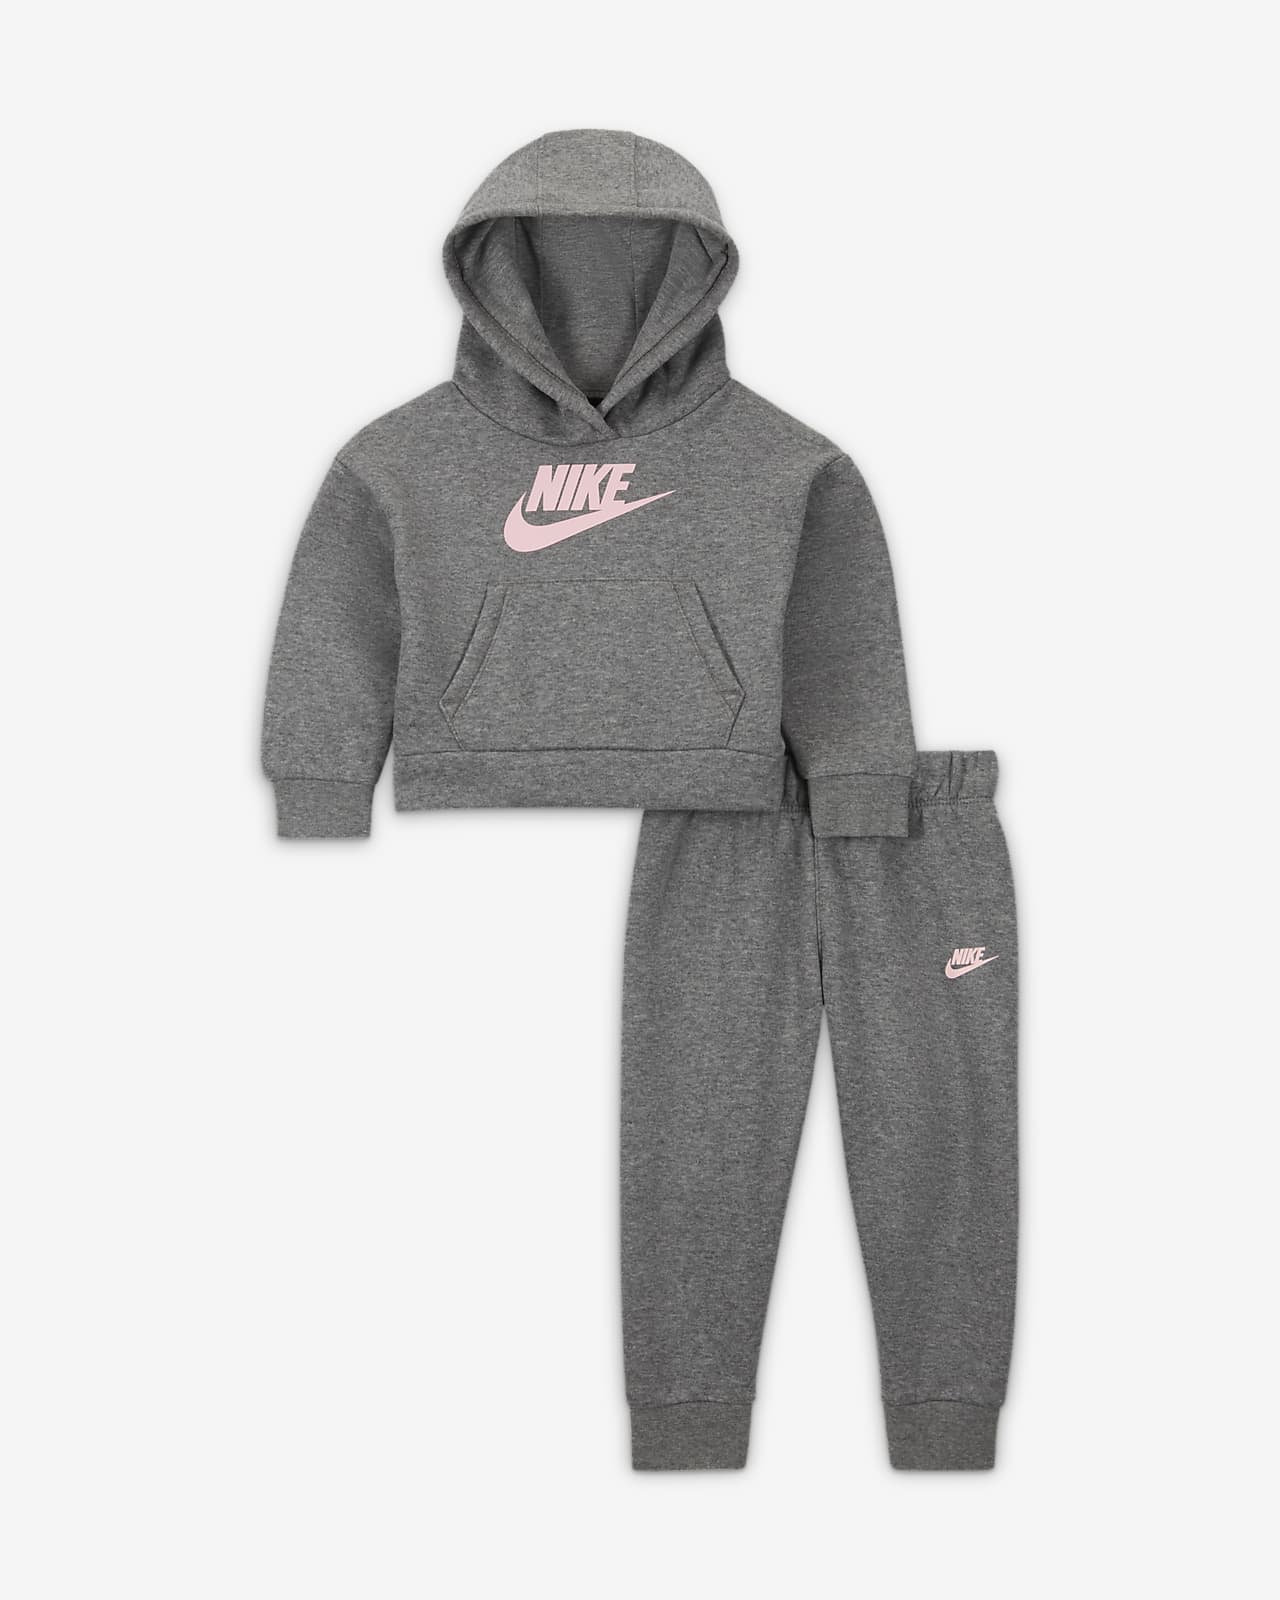 Nike Sportswear Club Fleece Conjunt de dessuadora amb caputxa i joggers - Nadó (12-24 M)